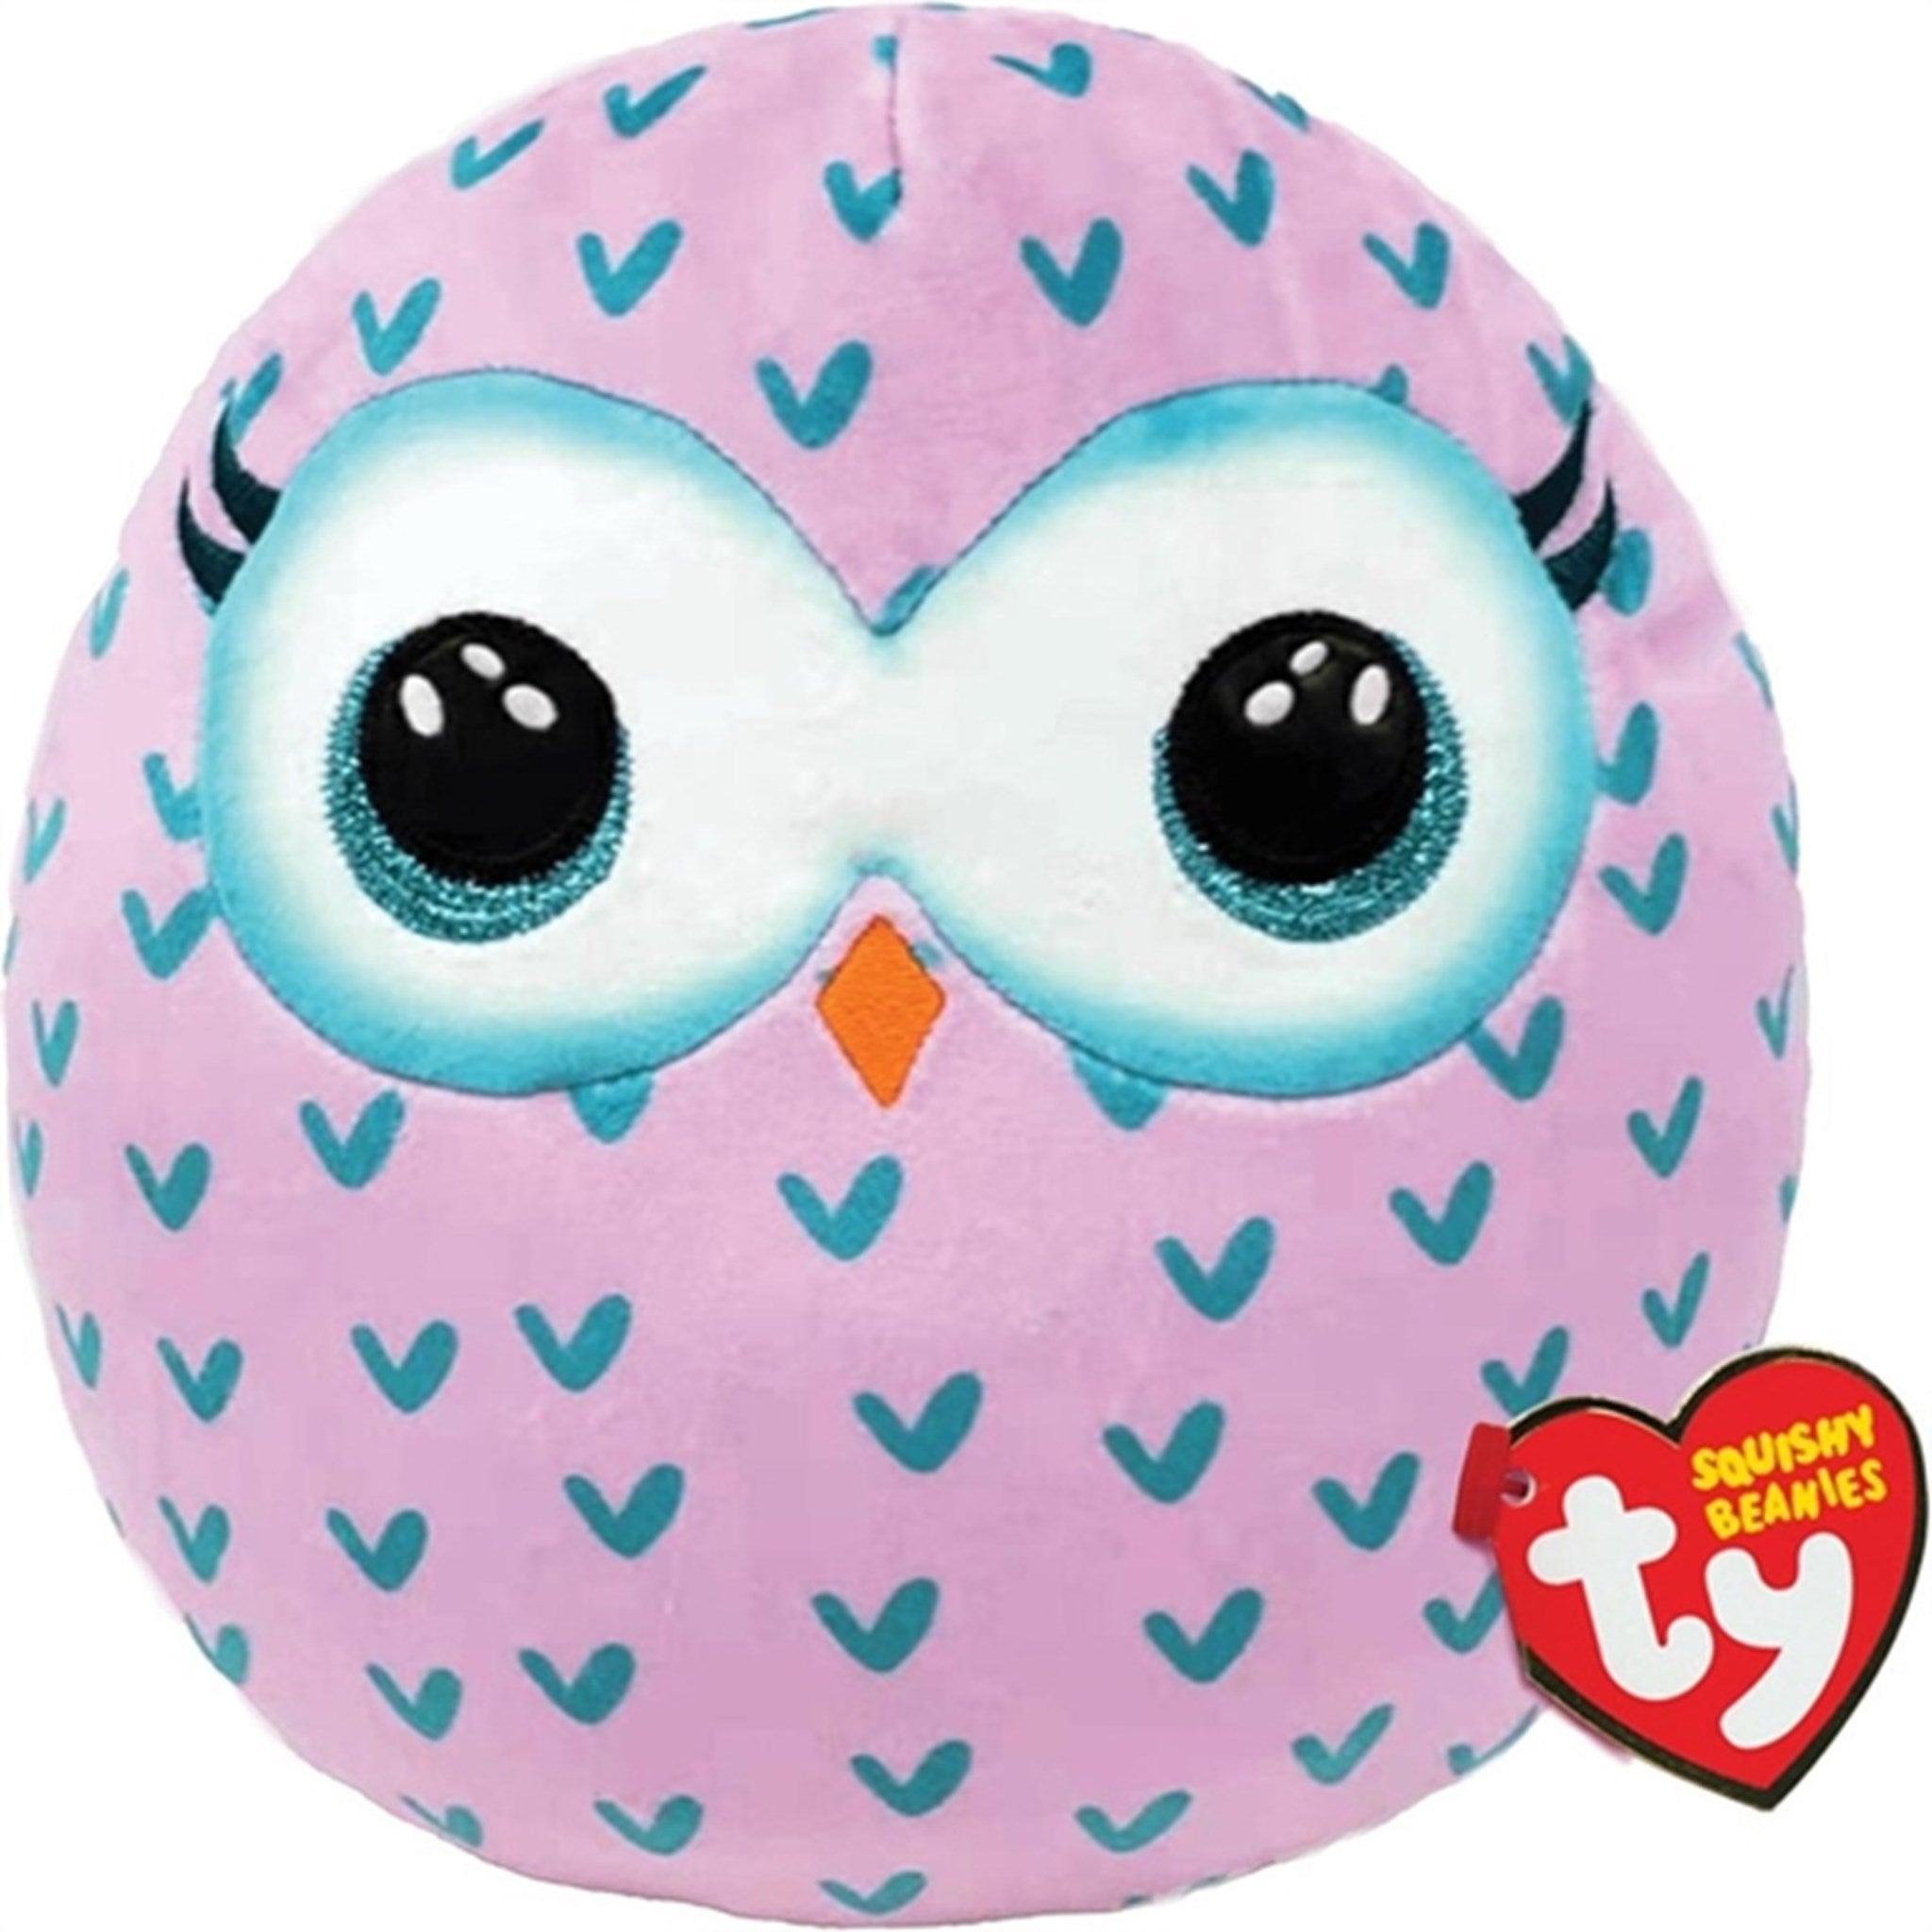 TY Squishy Beanies Winks - Owl Squish 25cm